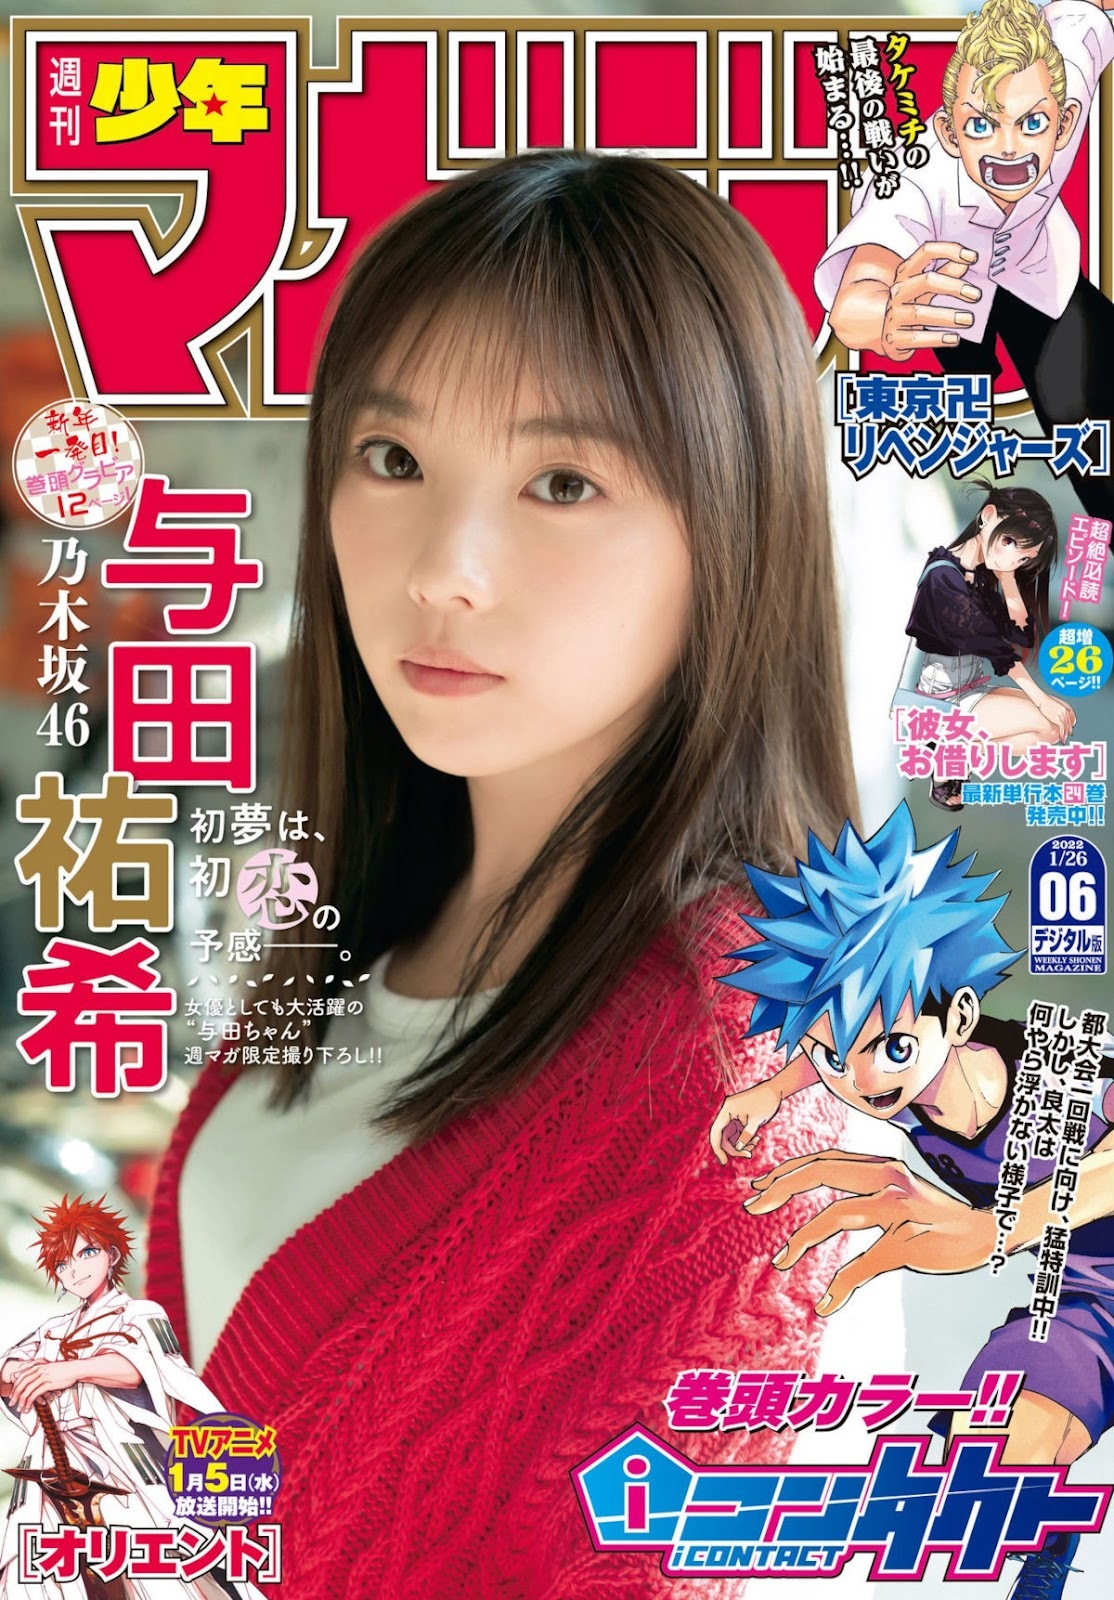 Yoda Yuki 与田祐希, Shonen Magazine 2022 No.06 (週刊少年マガジン 2022年6号) - itotii